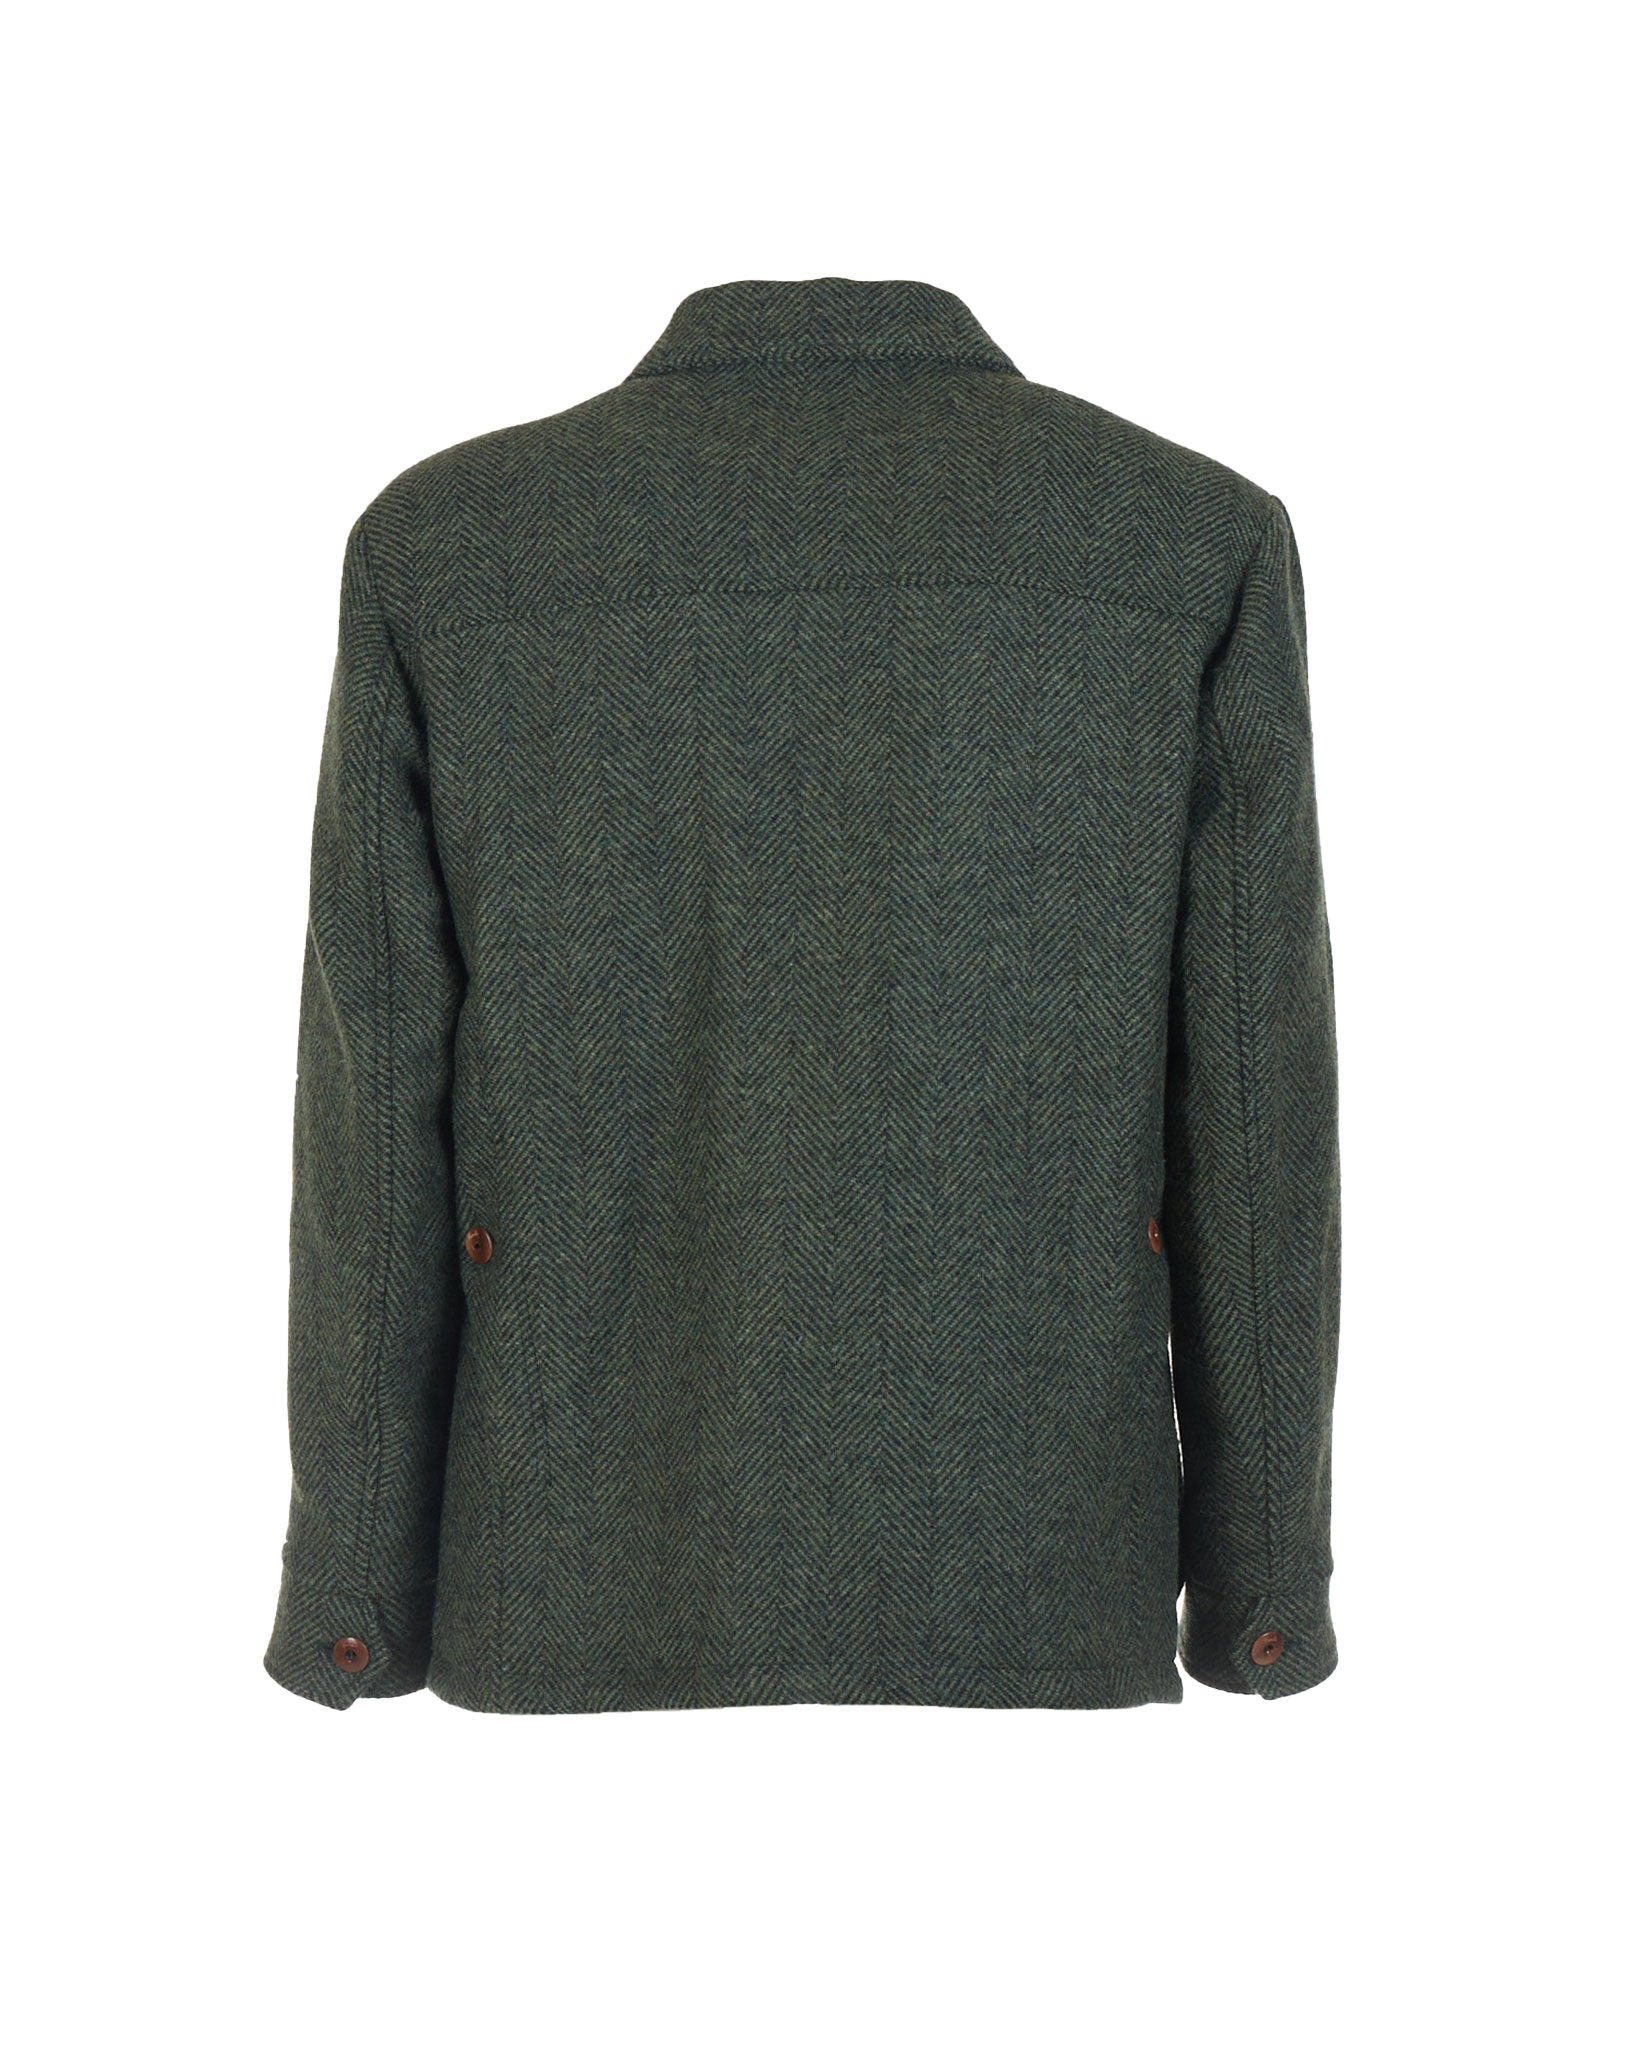 Field Jacket in herringbone wool